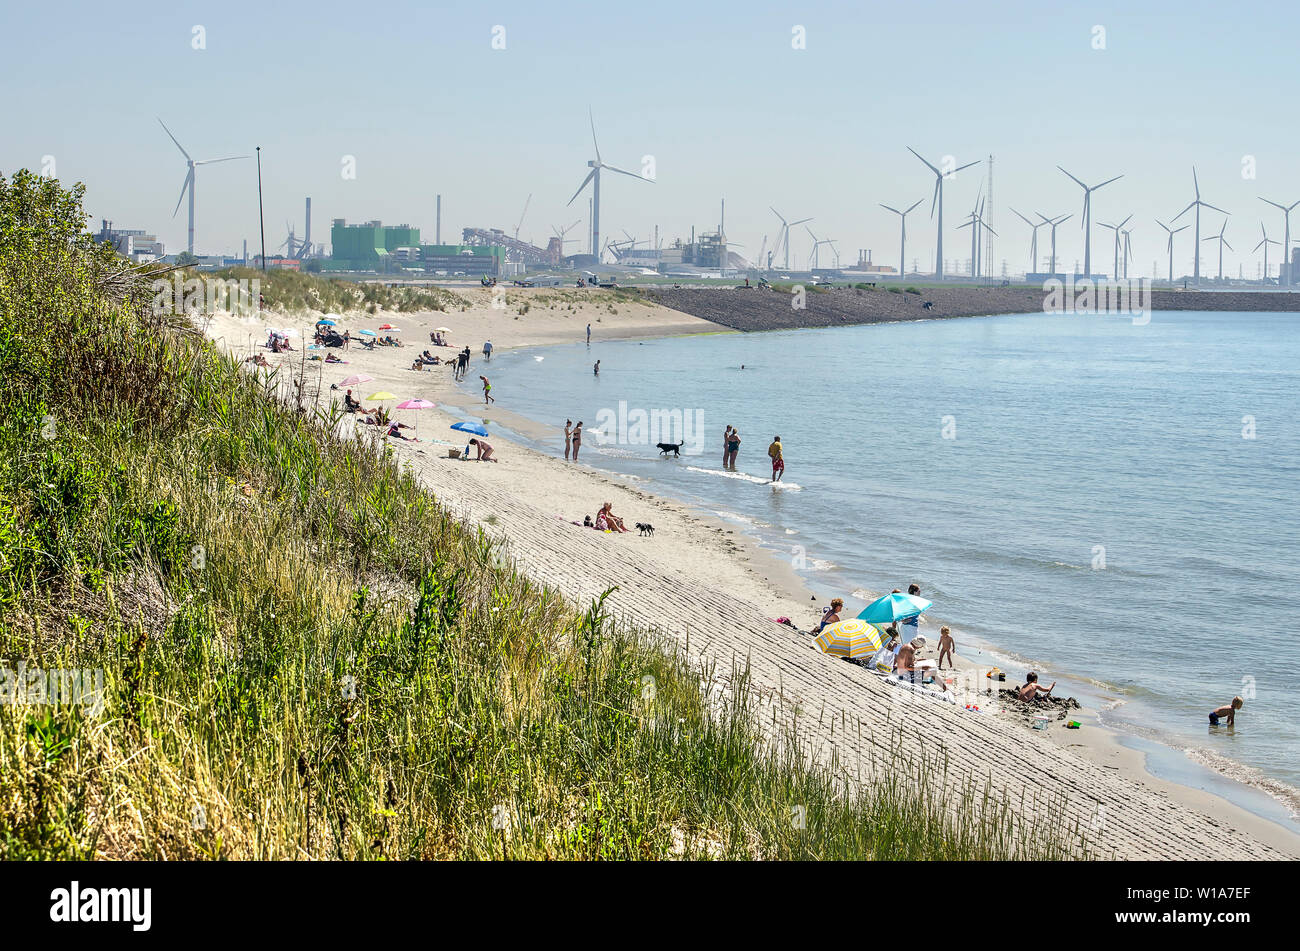 Vlissingen, Pays-Bas, le 29 juin 2019 : plage étroite sur l'estuaire de l'Escaut occidental sur une journée ensoleillée avec les éoliennes de la zone industrielle de sloe Banque D'Images